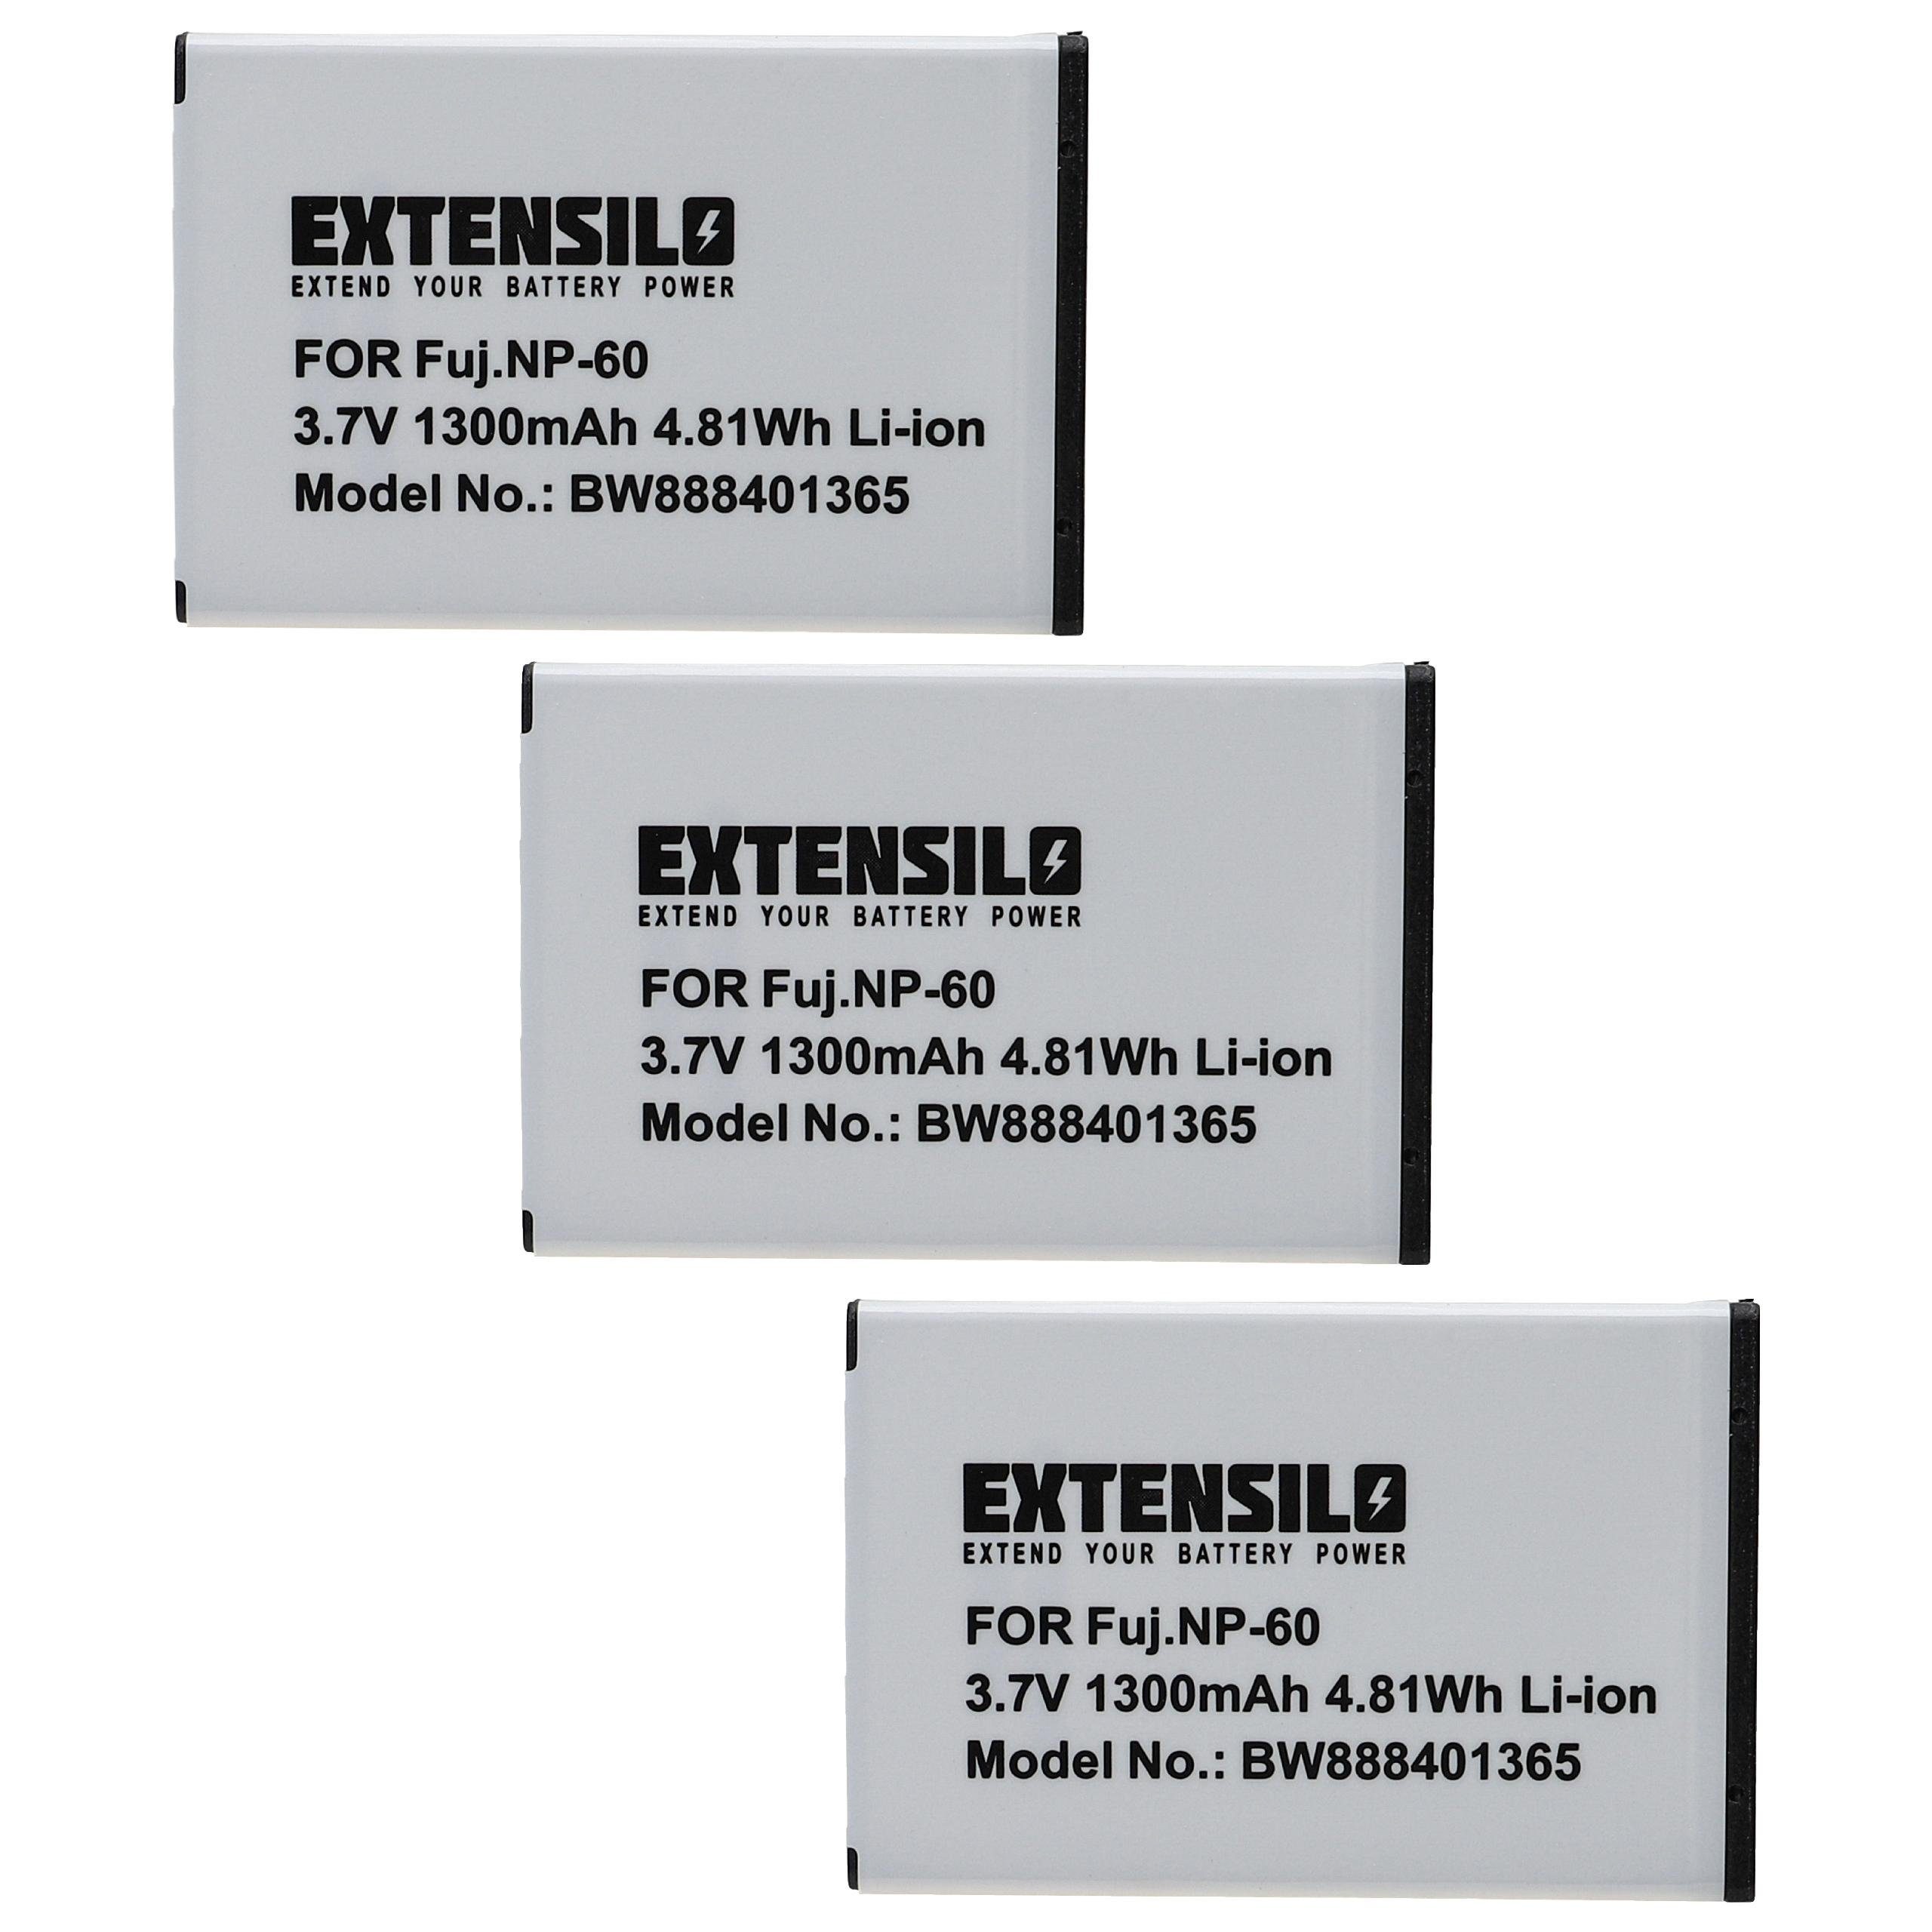 1300 V) Extensilo HDV-R50, Digilife LDC-XT16i mit Kamera-Akku kompatibel mAh LDC-828Z, Li-Ion (3,7